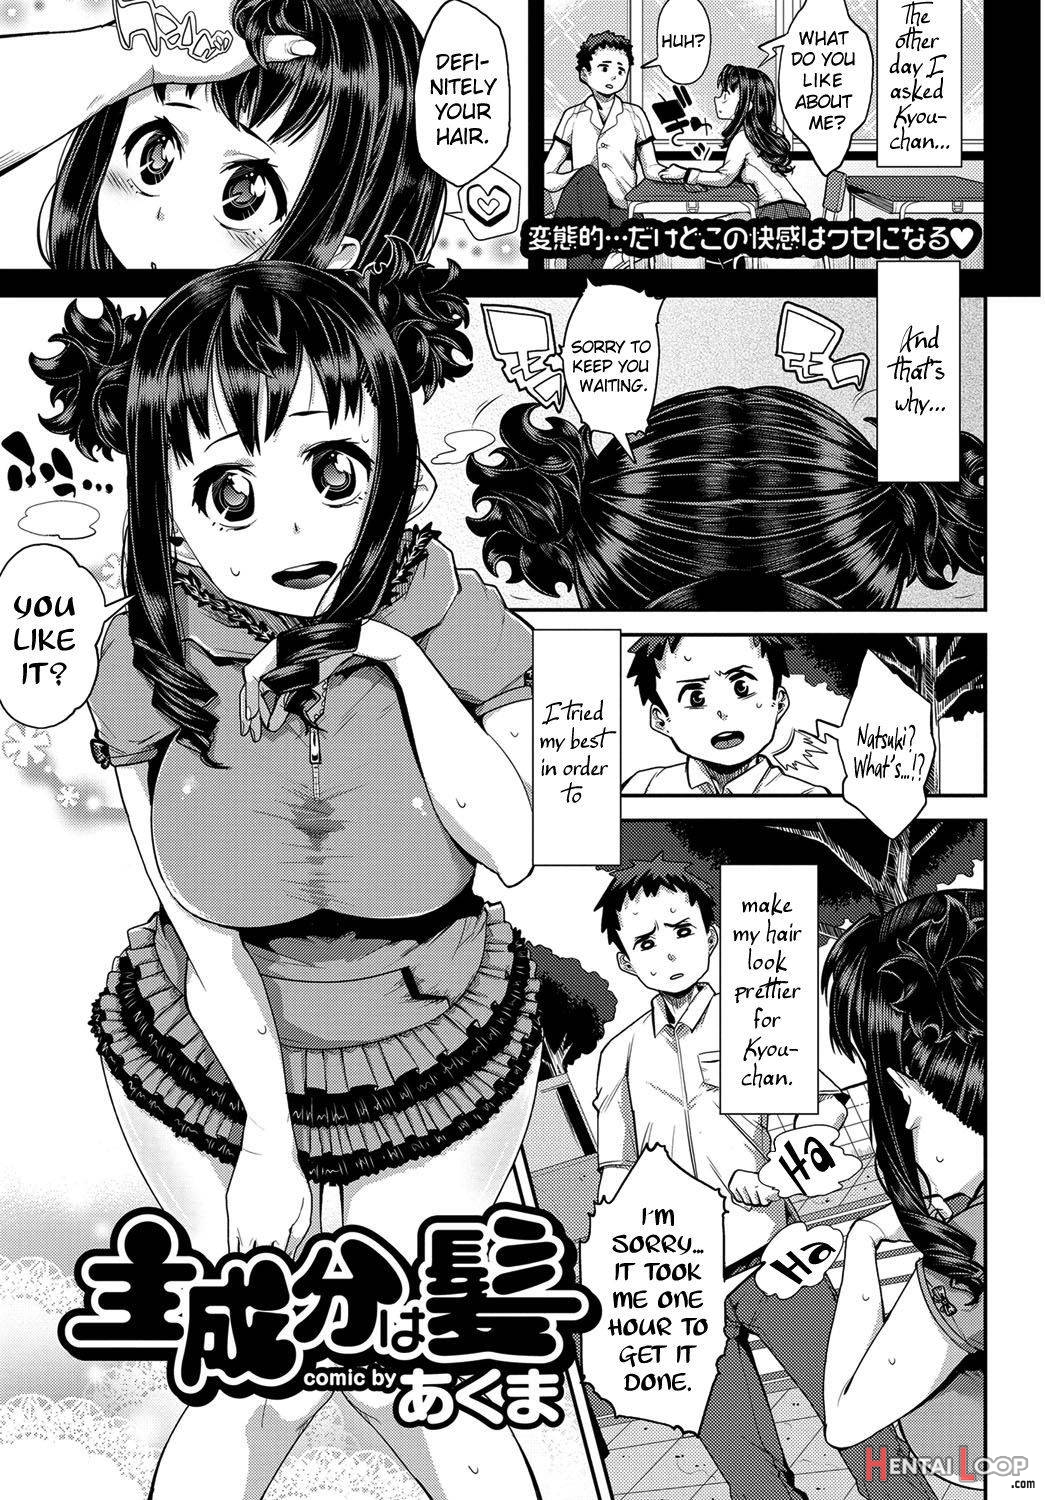 Shuseibun Wa Kami page 1